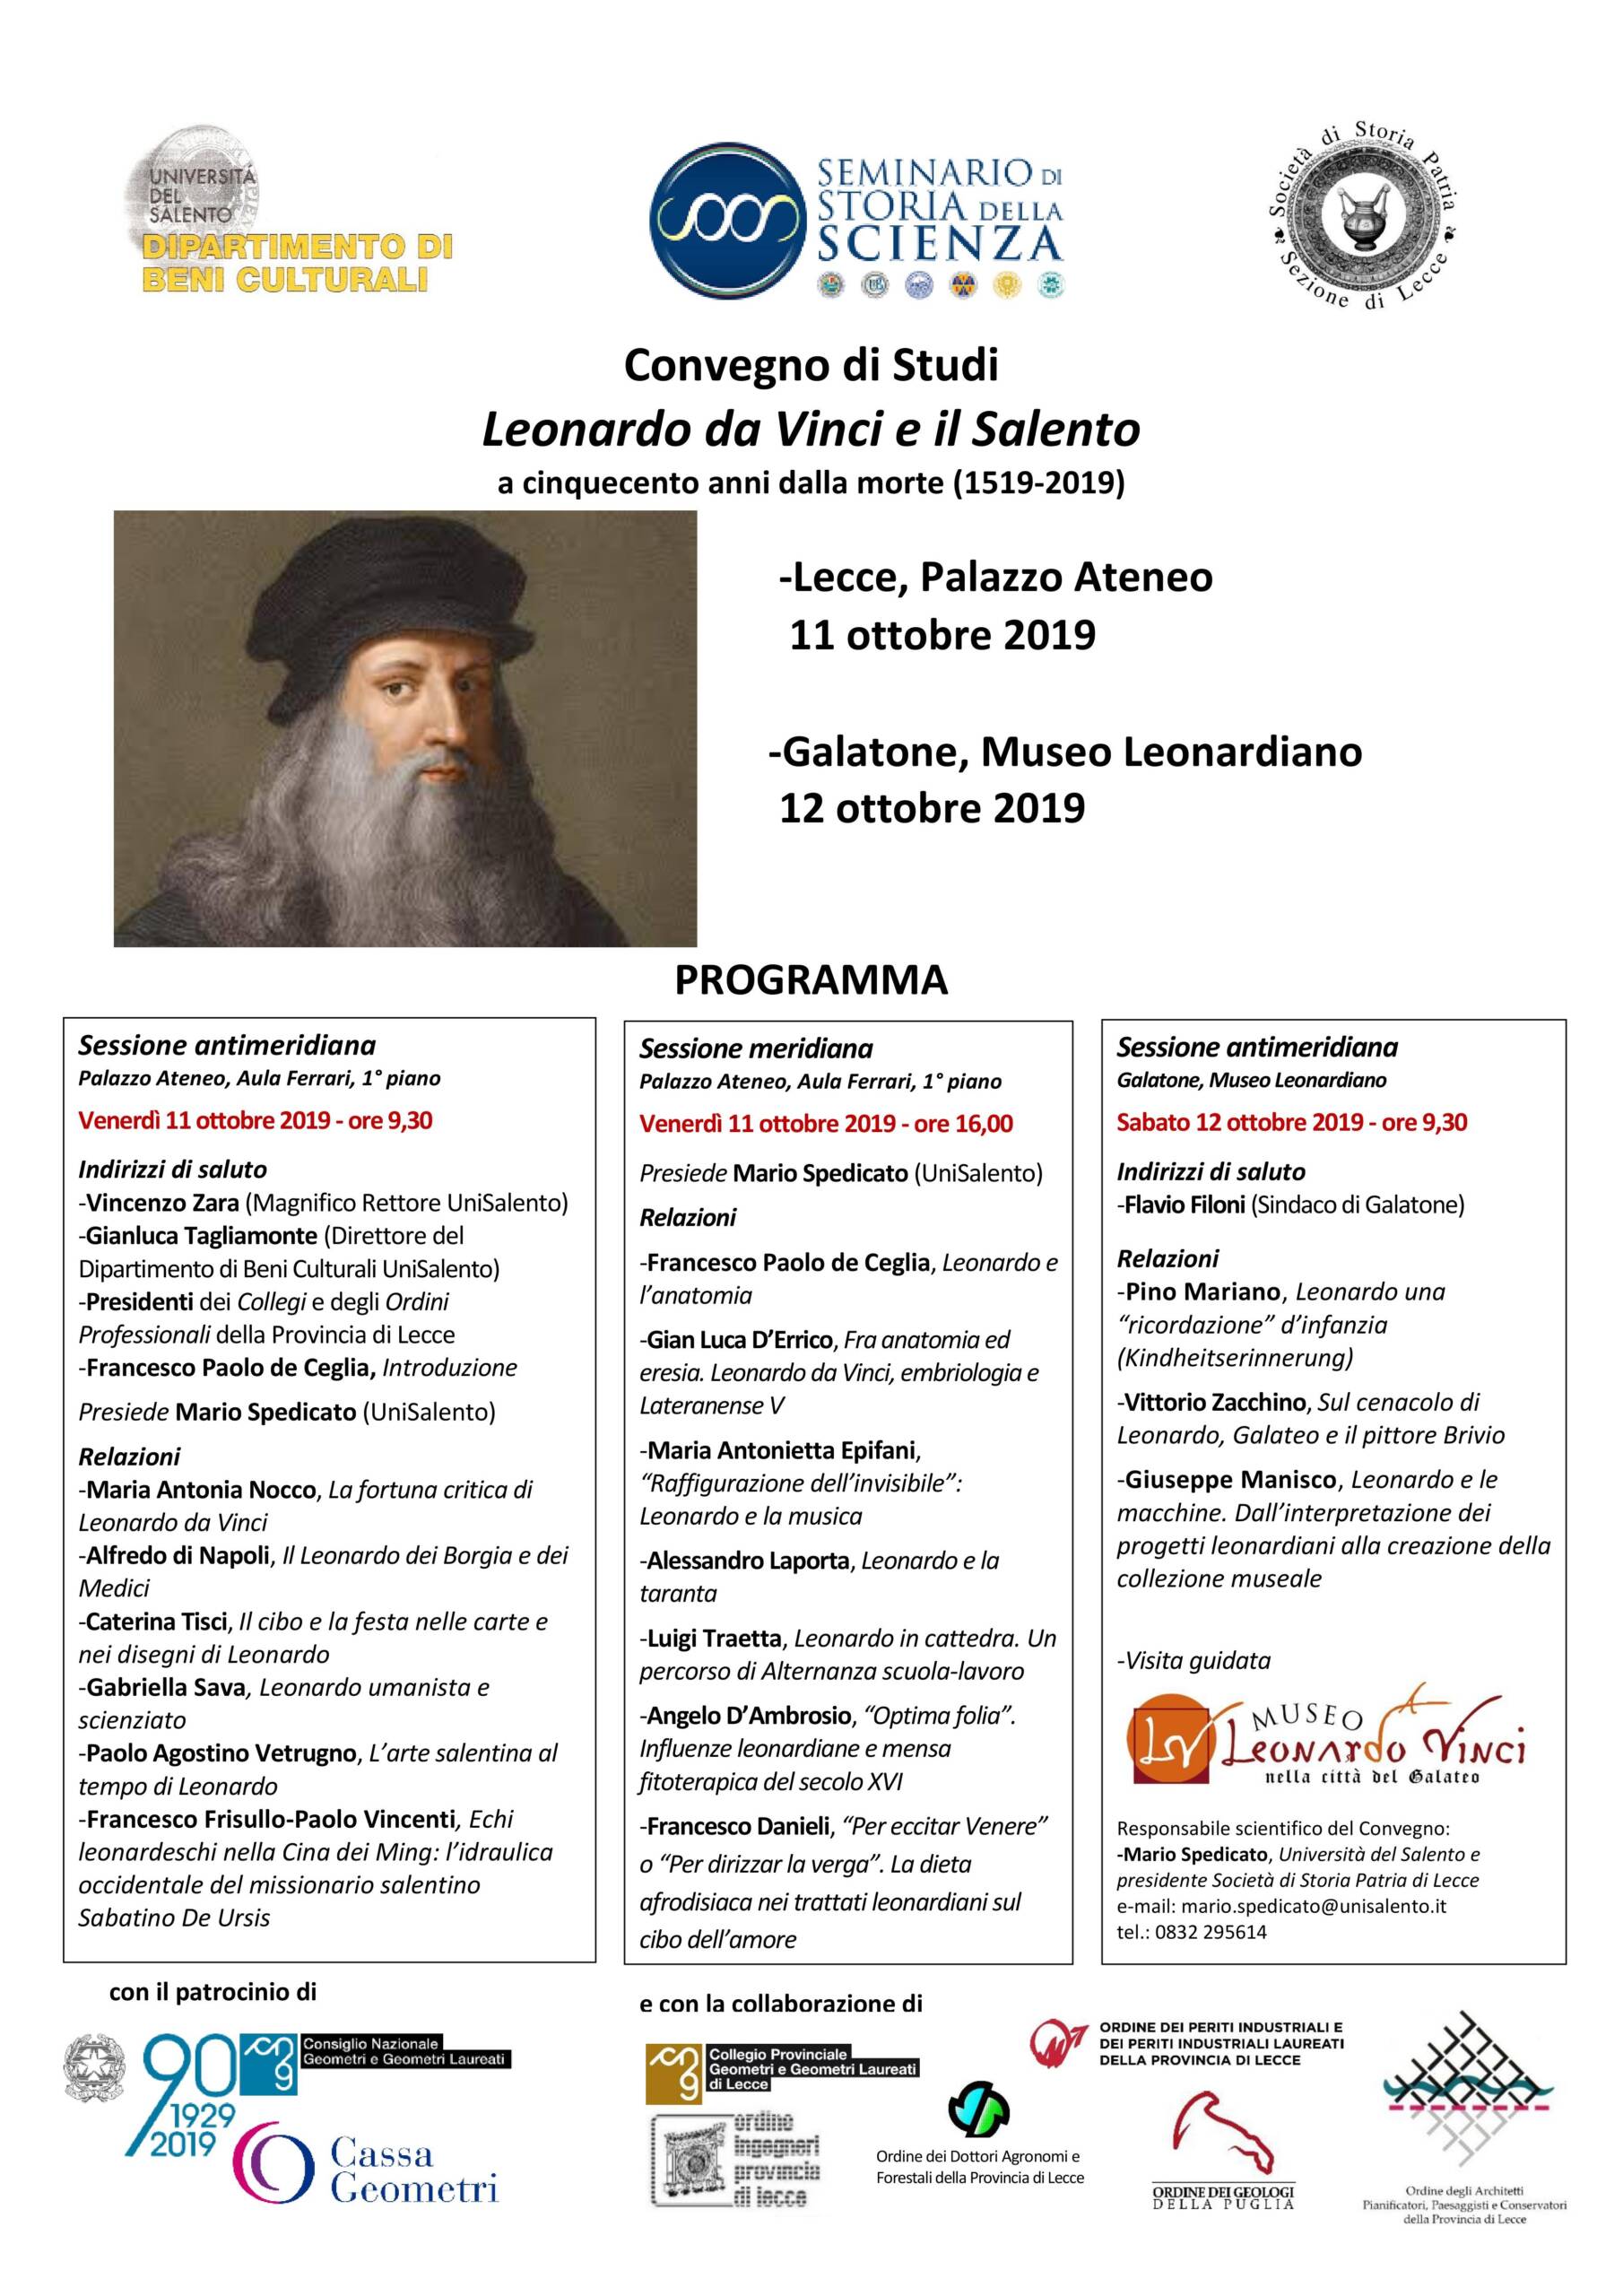 Convegno di Studi “Leonardo da Vinci e il Salento a cinquecento anni dalla morte (1519-2019)”